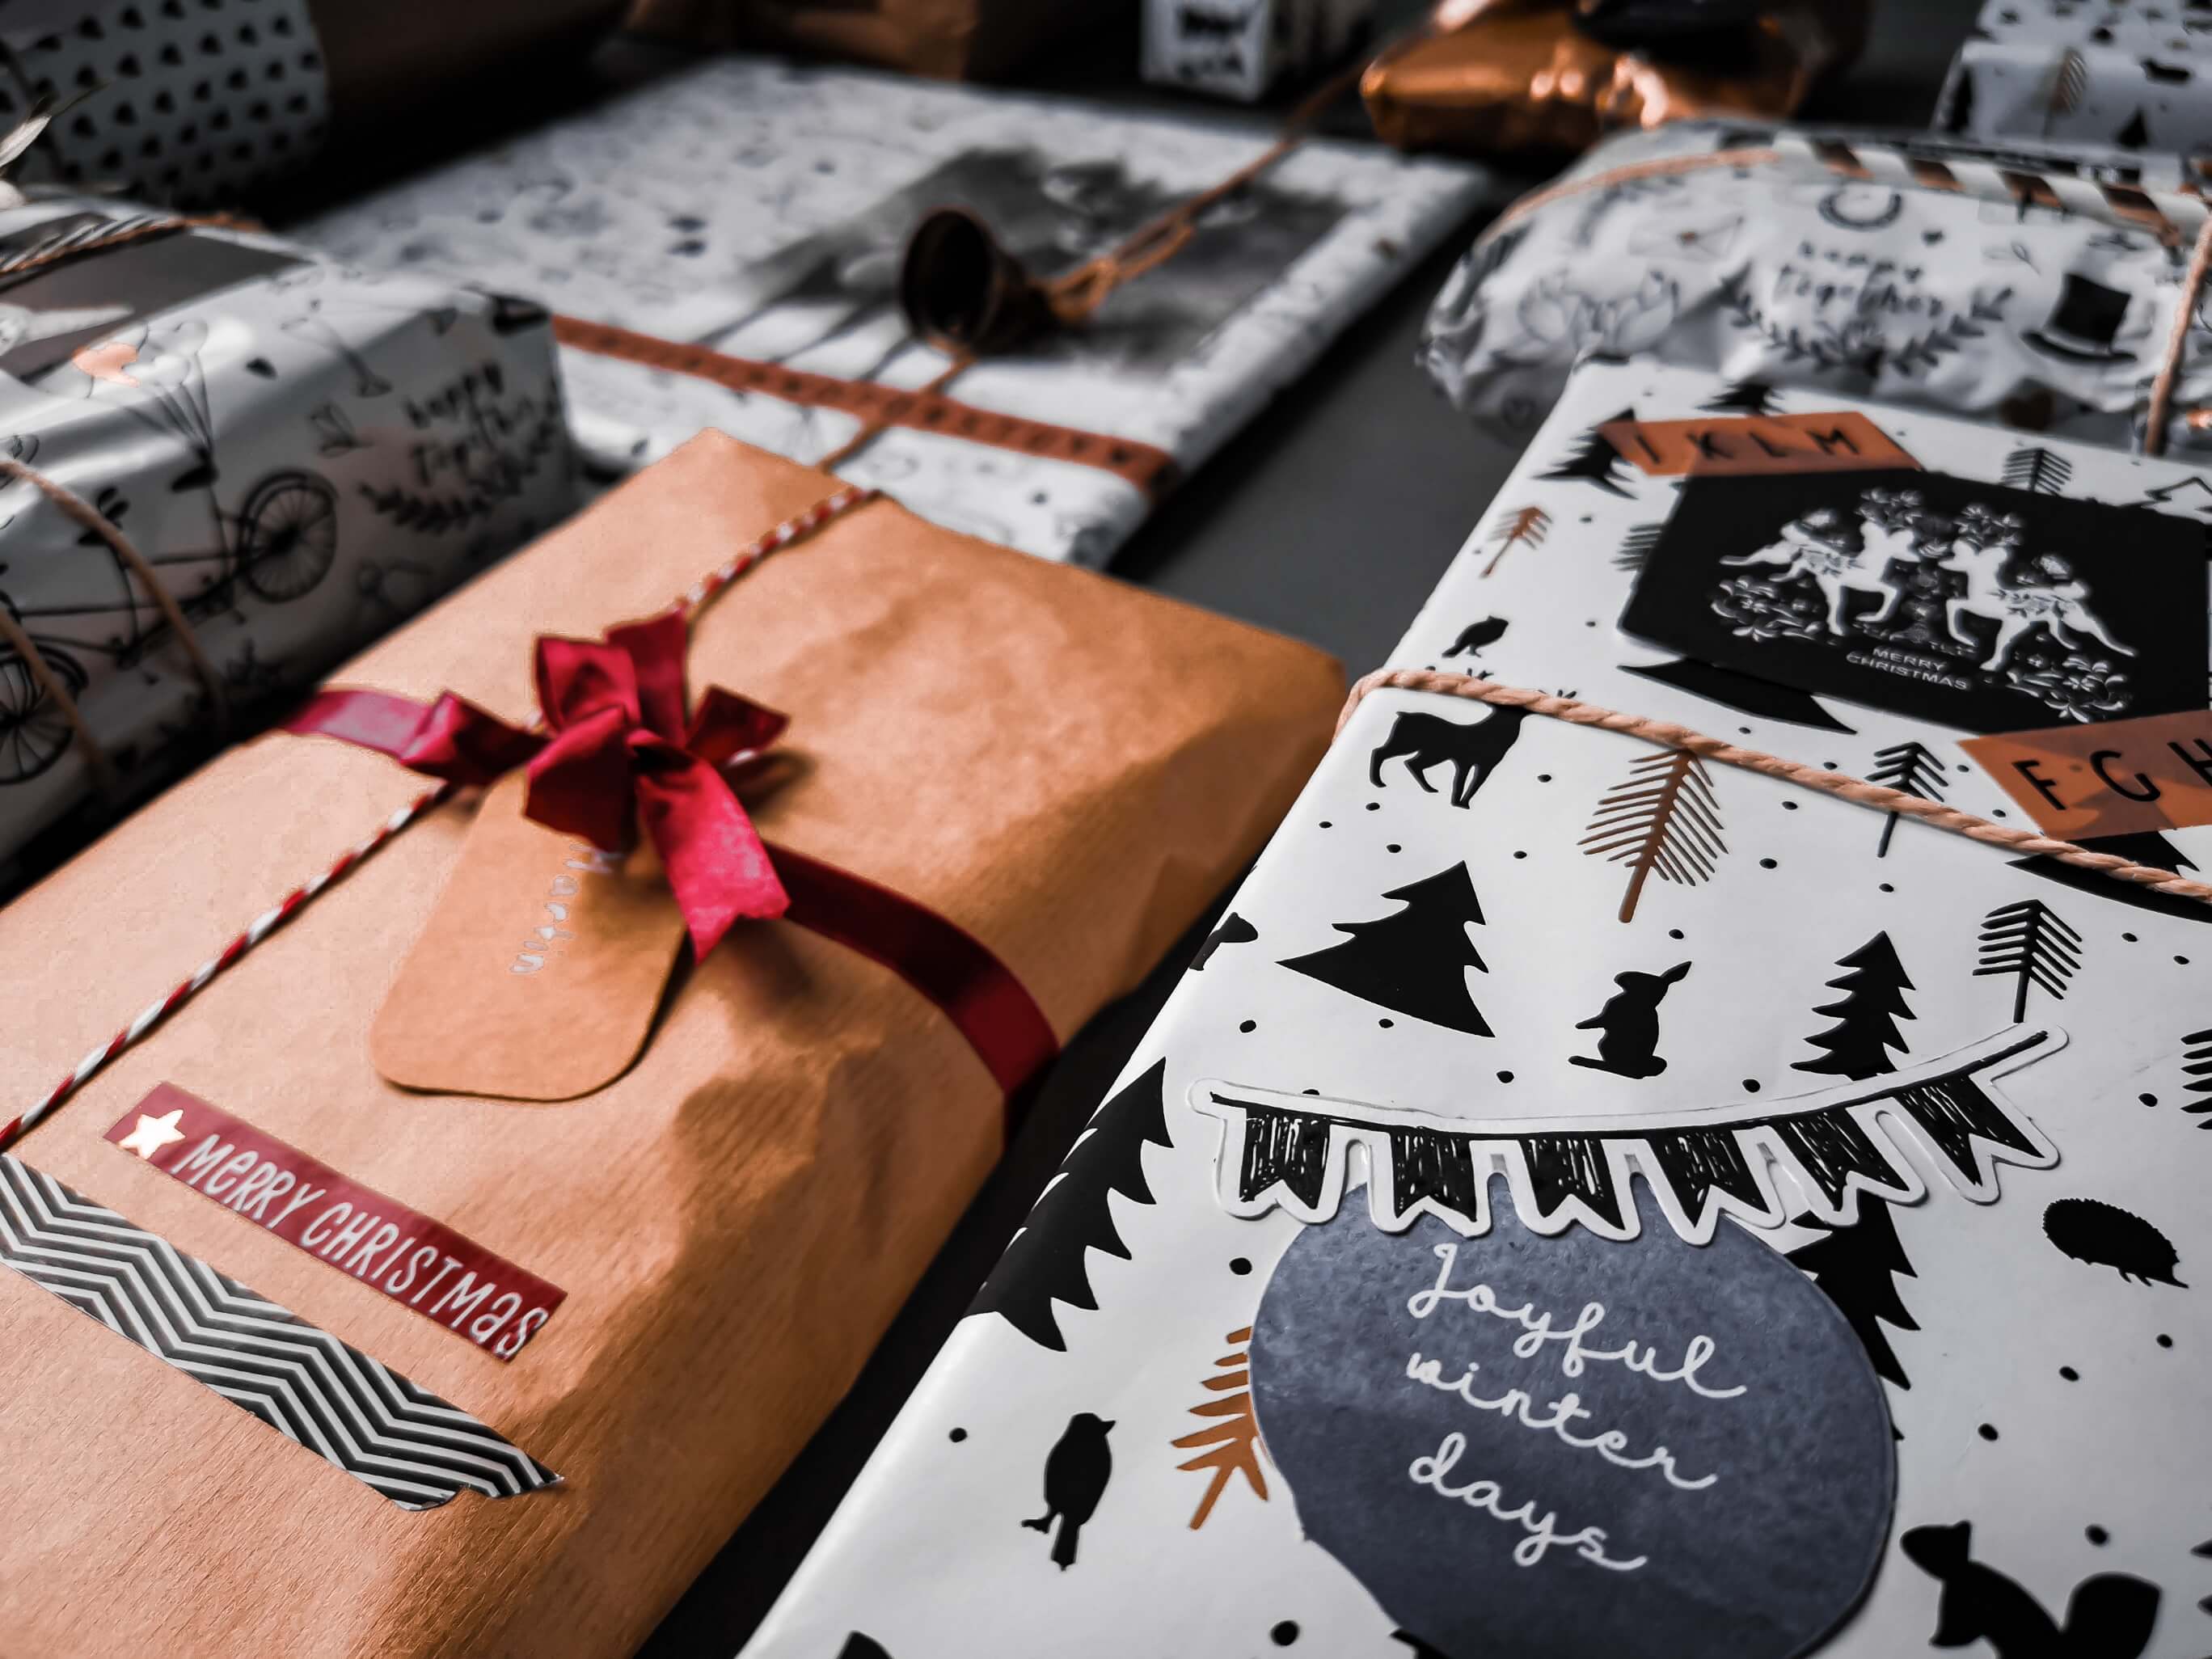 IMG 20191207 110558 resized 20191208 060331890 - Geschenke verpacken: 11 kreative Tipps zum Selbermachen